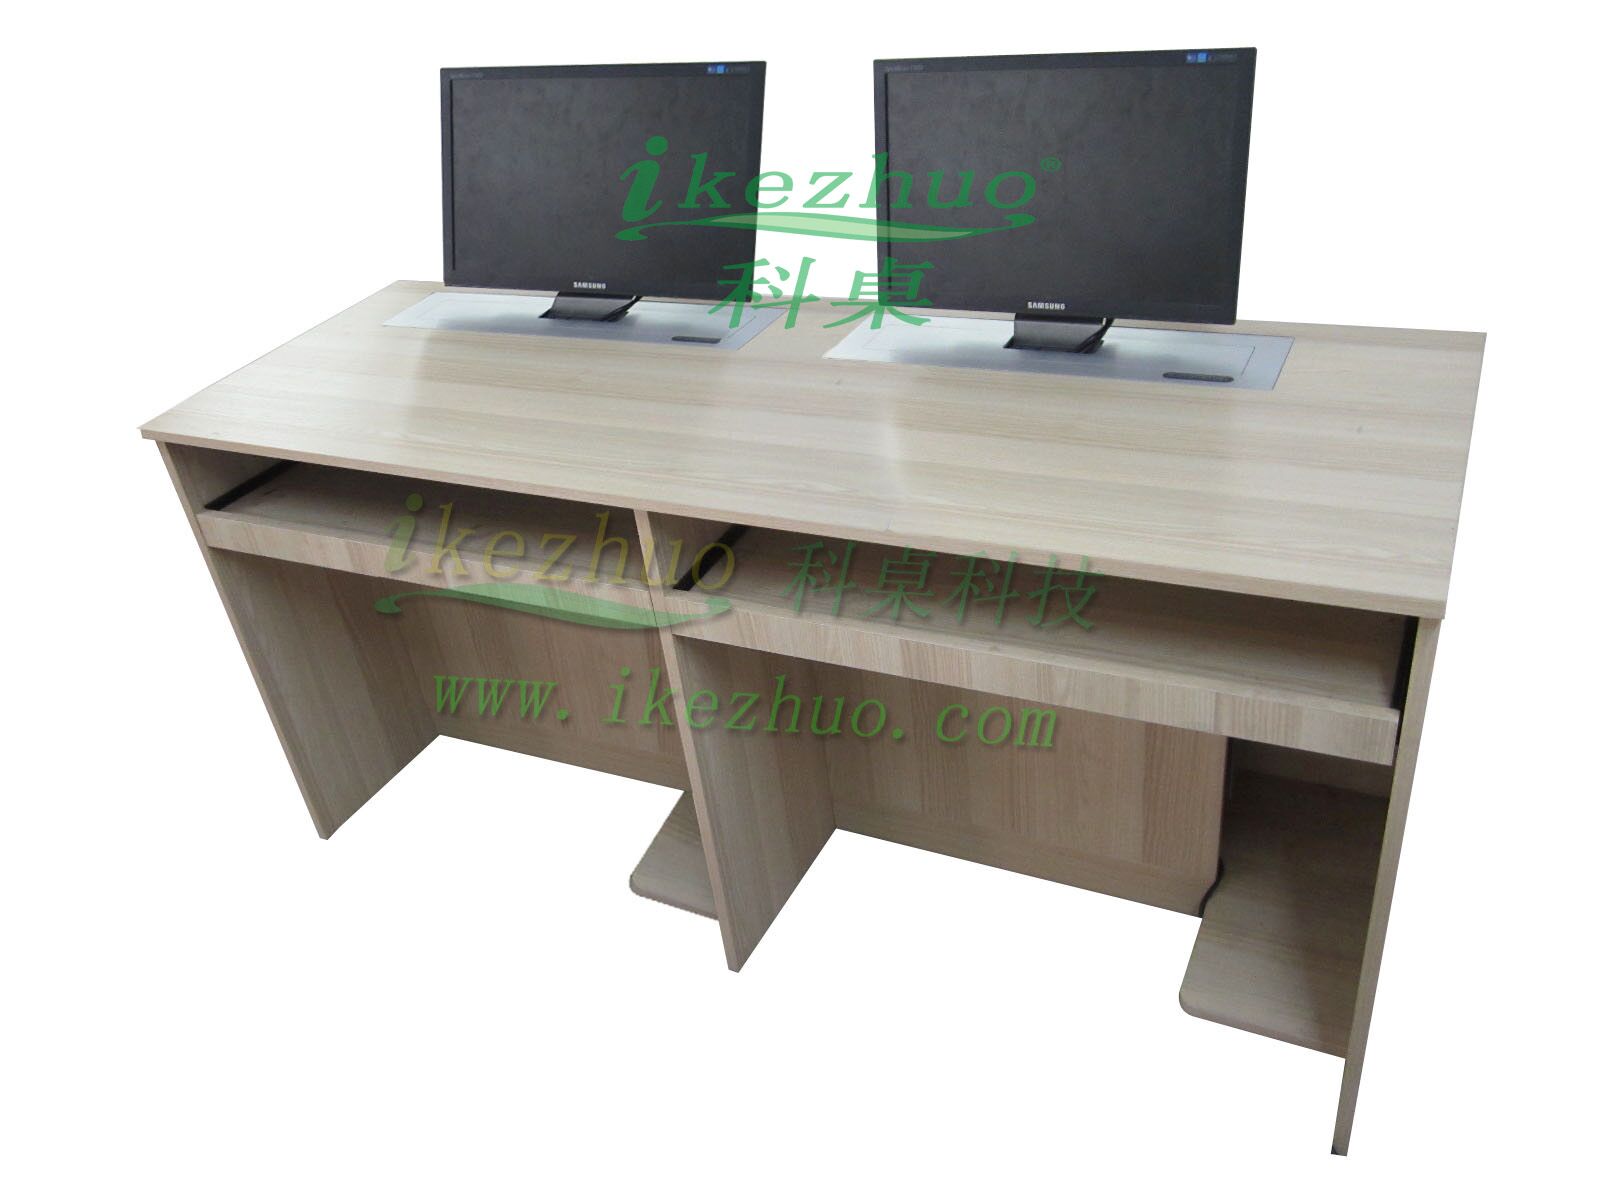 科桌双人升降电脑桌 隐藏升降器电脑桌 机房会议电脑桌